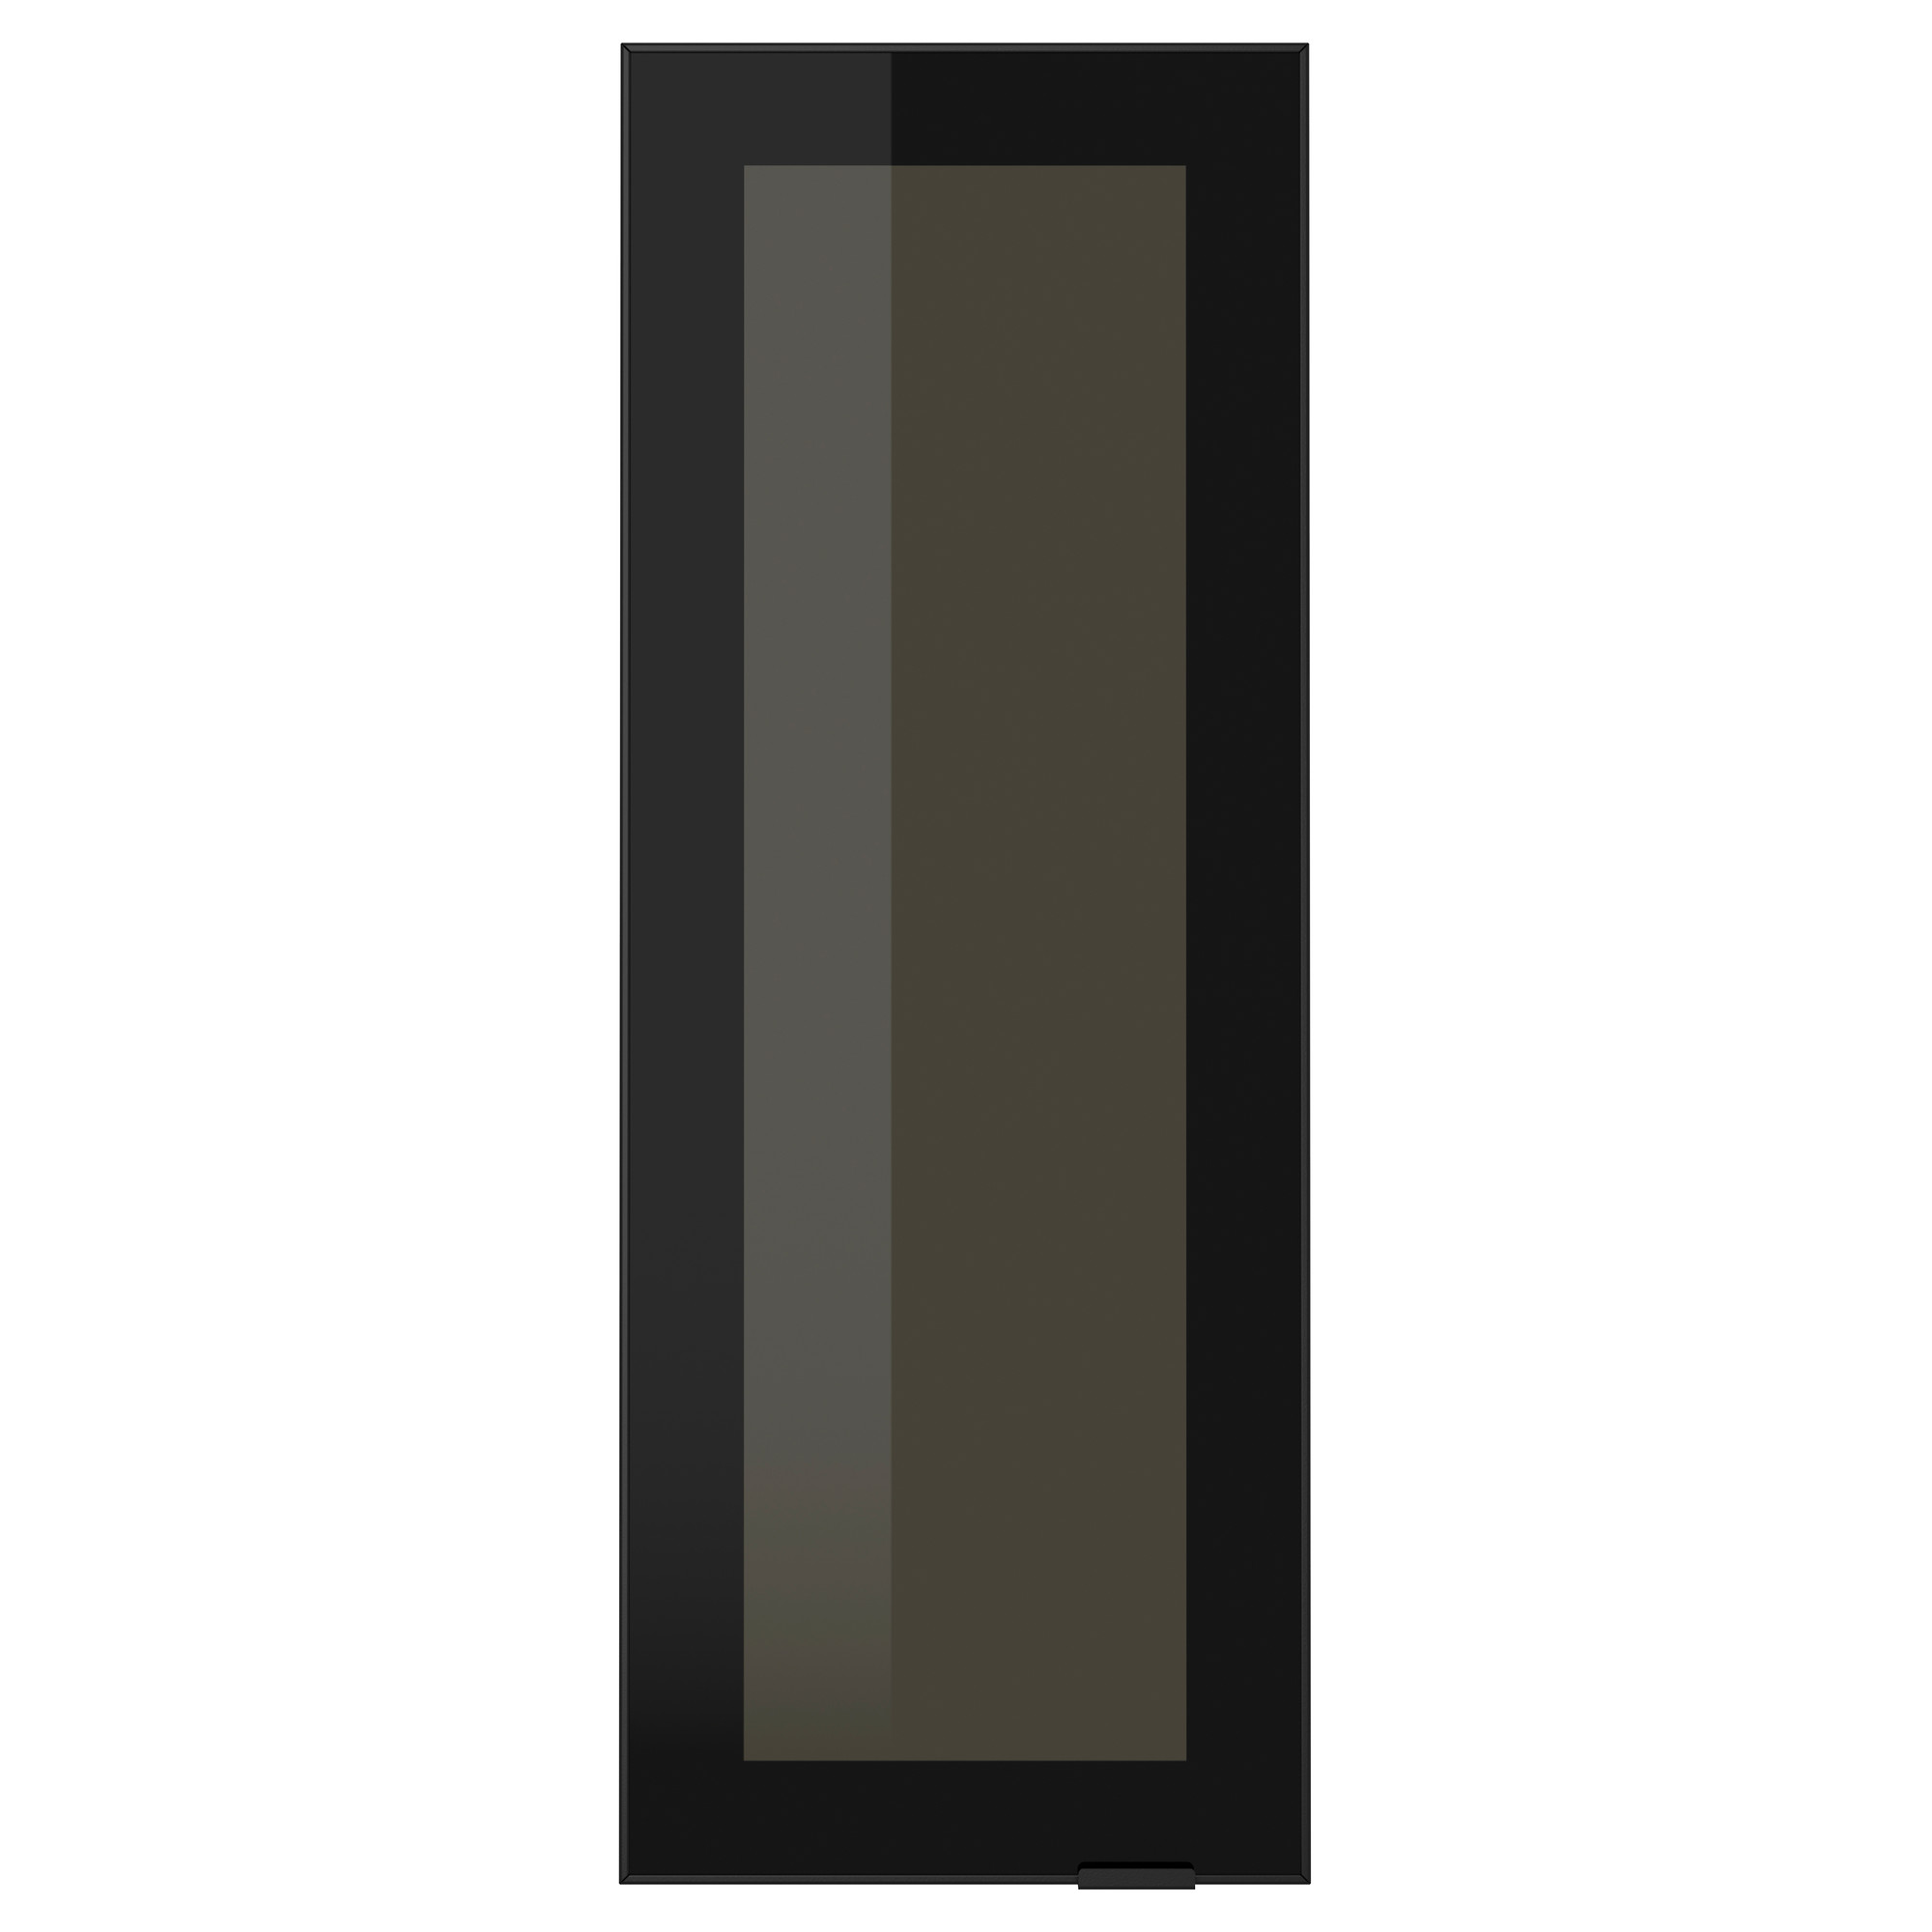 Черная алюминиевая рамка. Стеклянные двери ЮТИС икеа. Икеа метод черные стеклянные дверцы. Дверца икеа ЮТИС 40x100 см для шкафа. Фасад в алюминиевой рамке со стеклом.